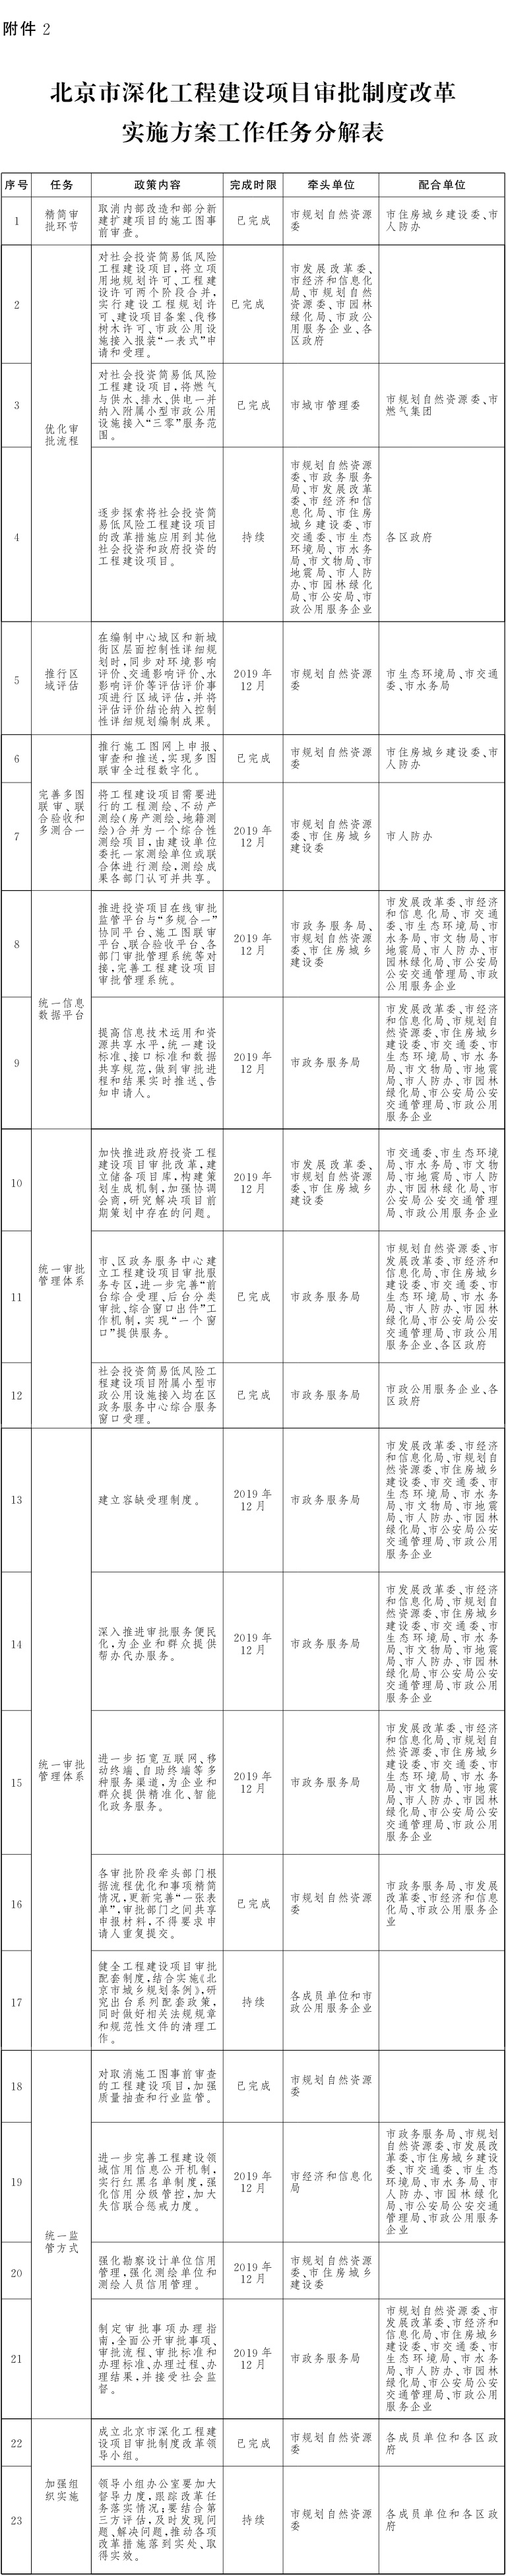 北京市人民政府办公厅关于印发《北京市进一步深化工程建设项目审批制度改革实施方案》的通知